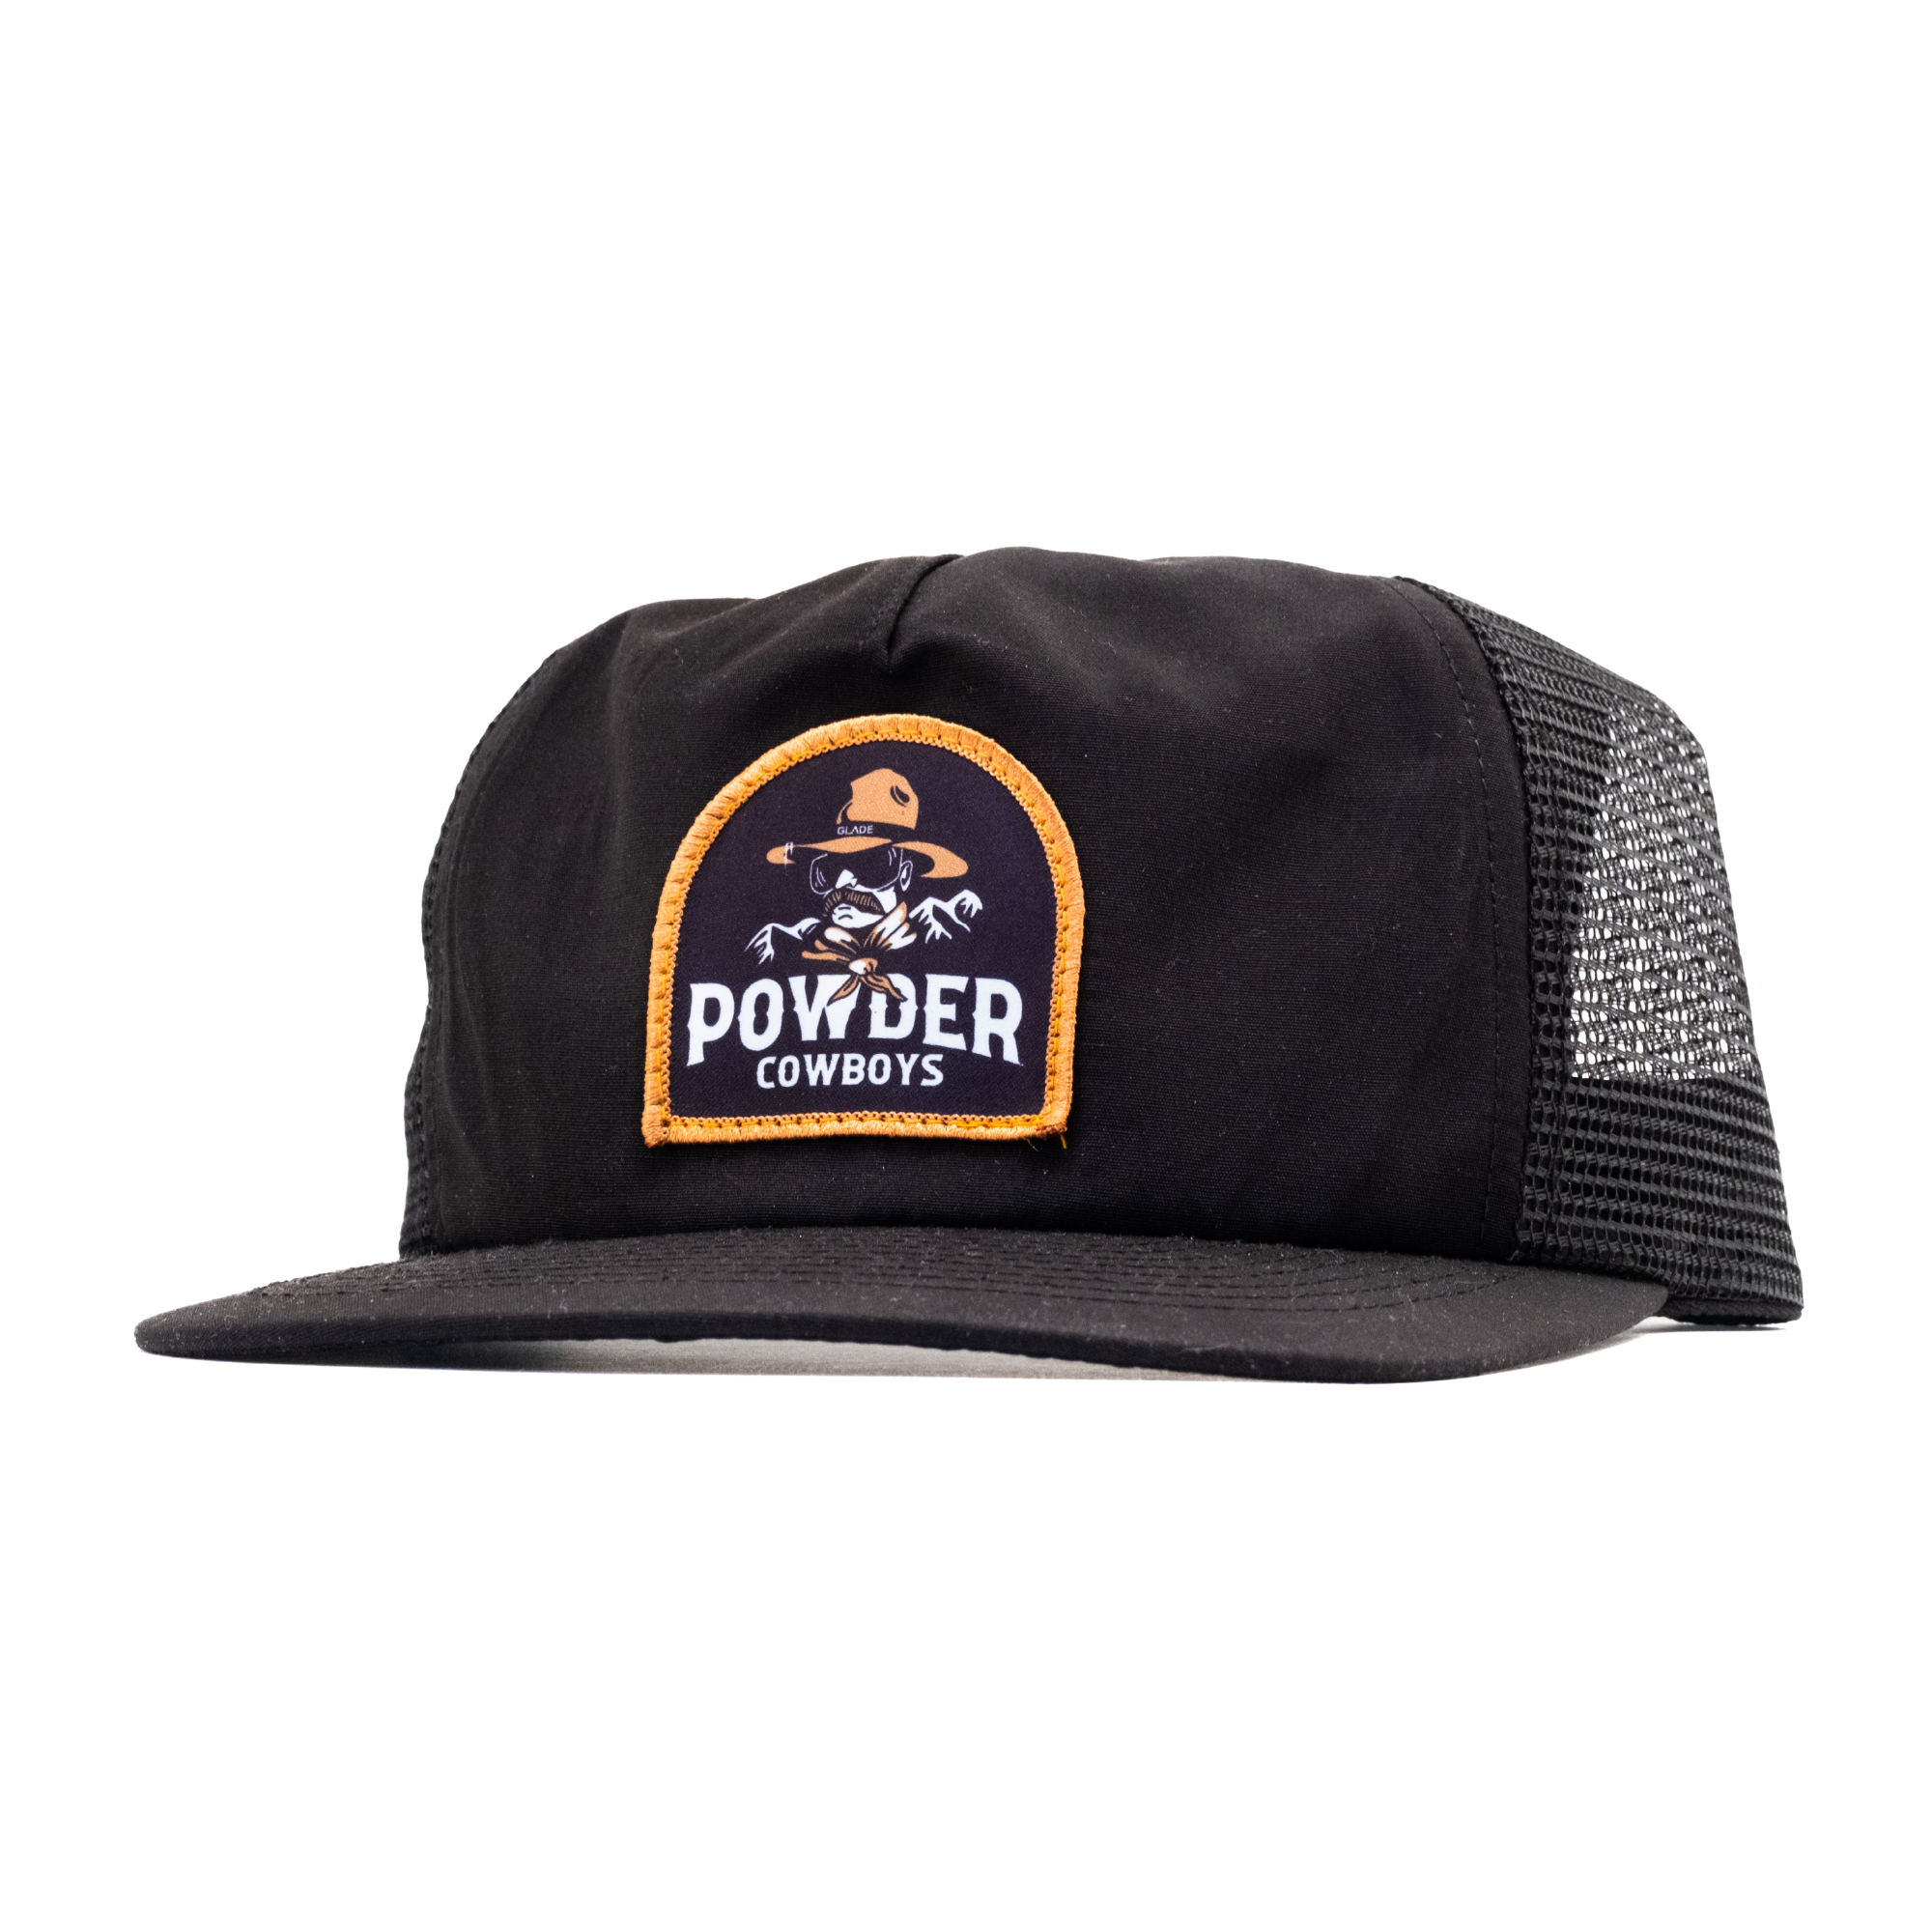 Powder Cowboys LTD Hat